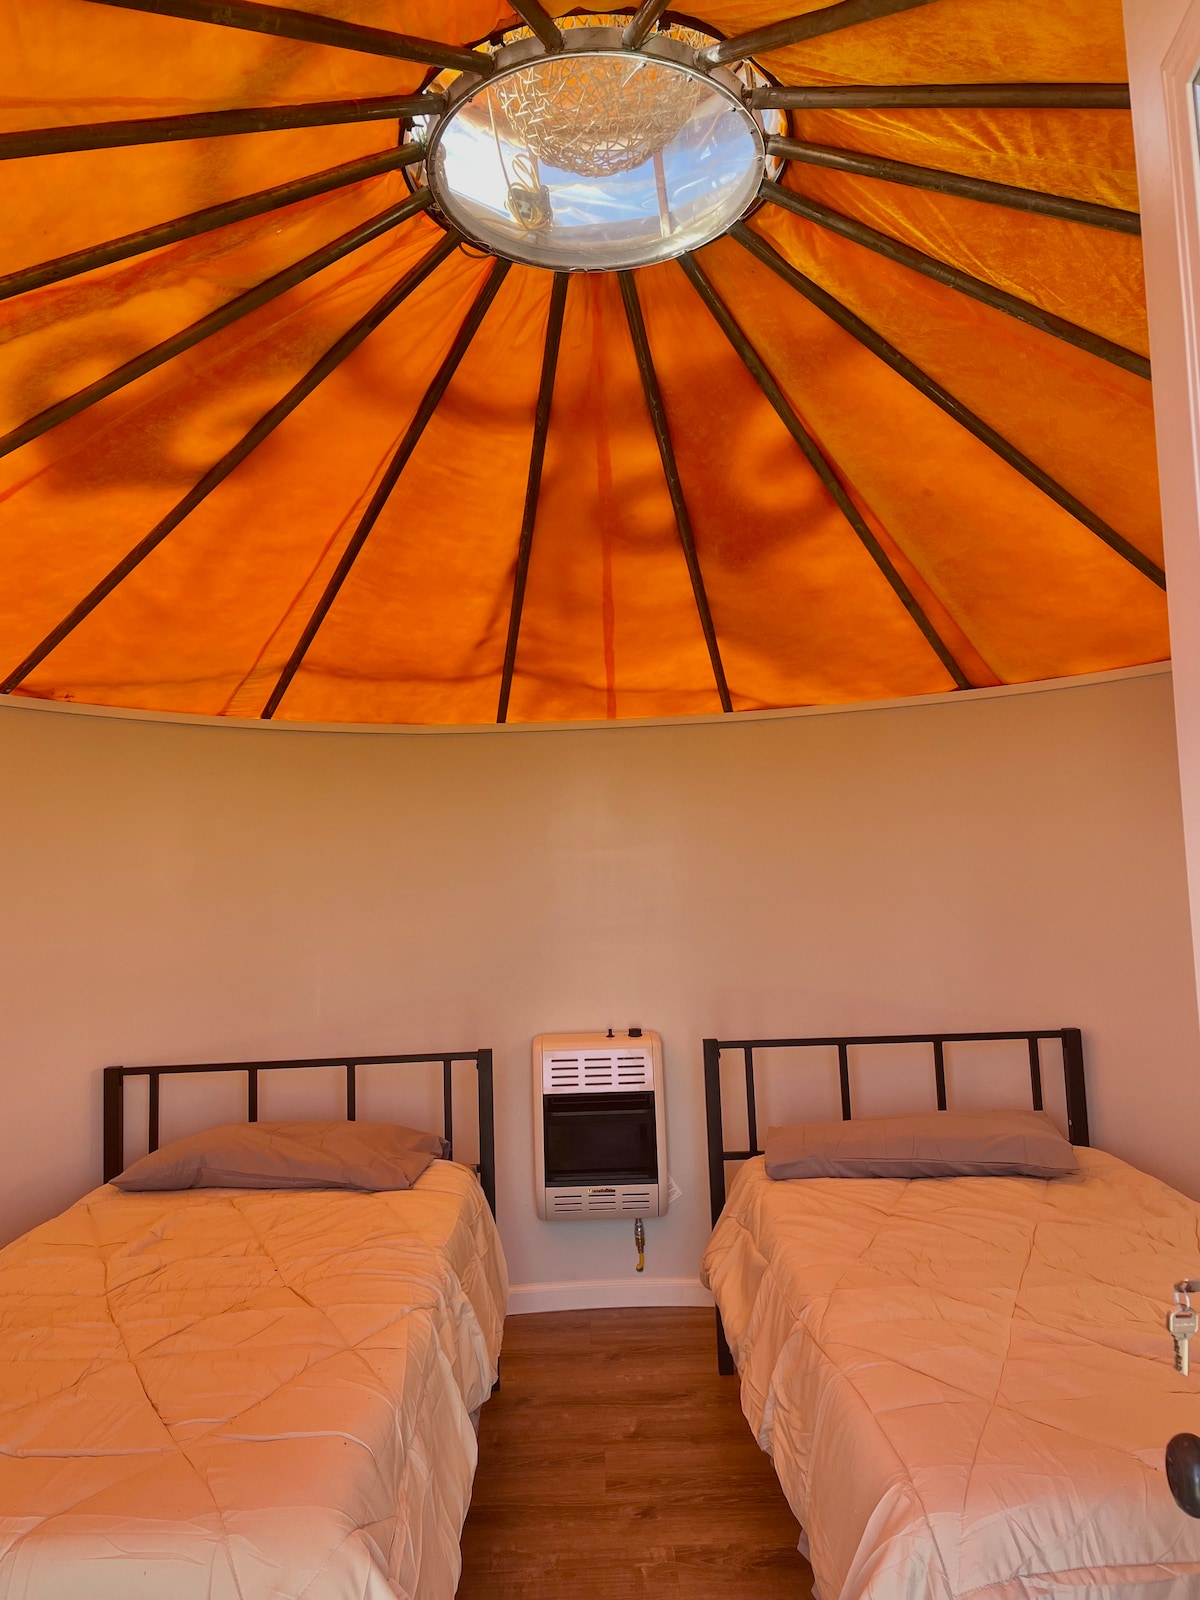 Romantic getaway for two yurt#2